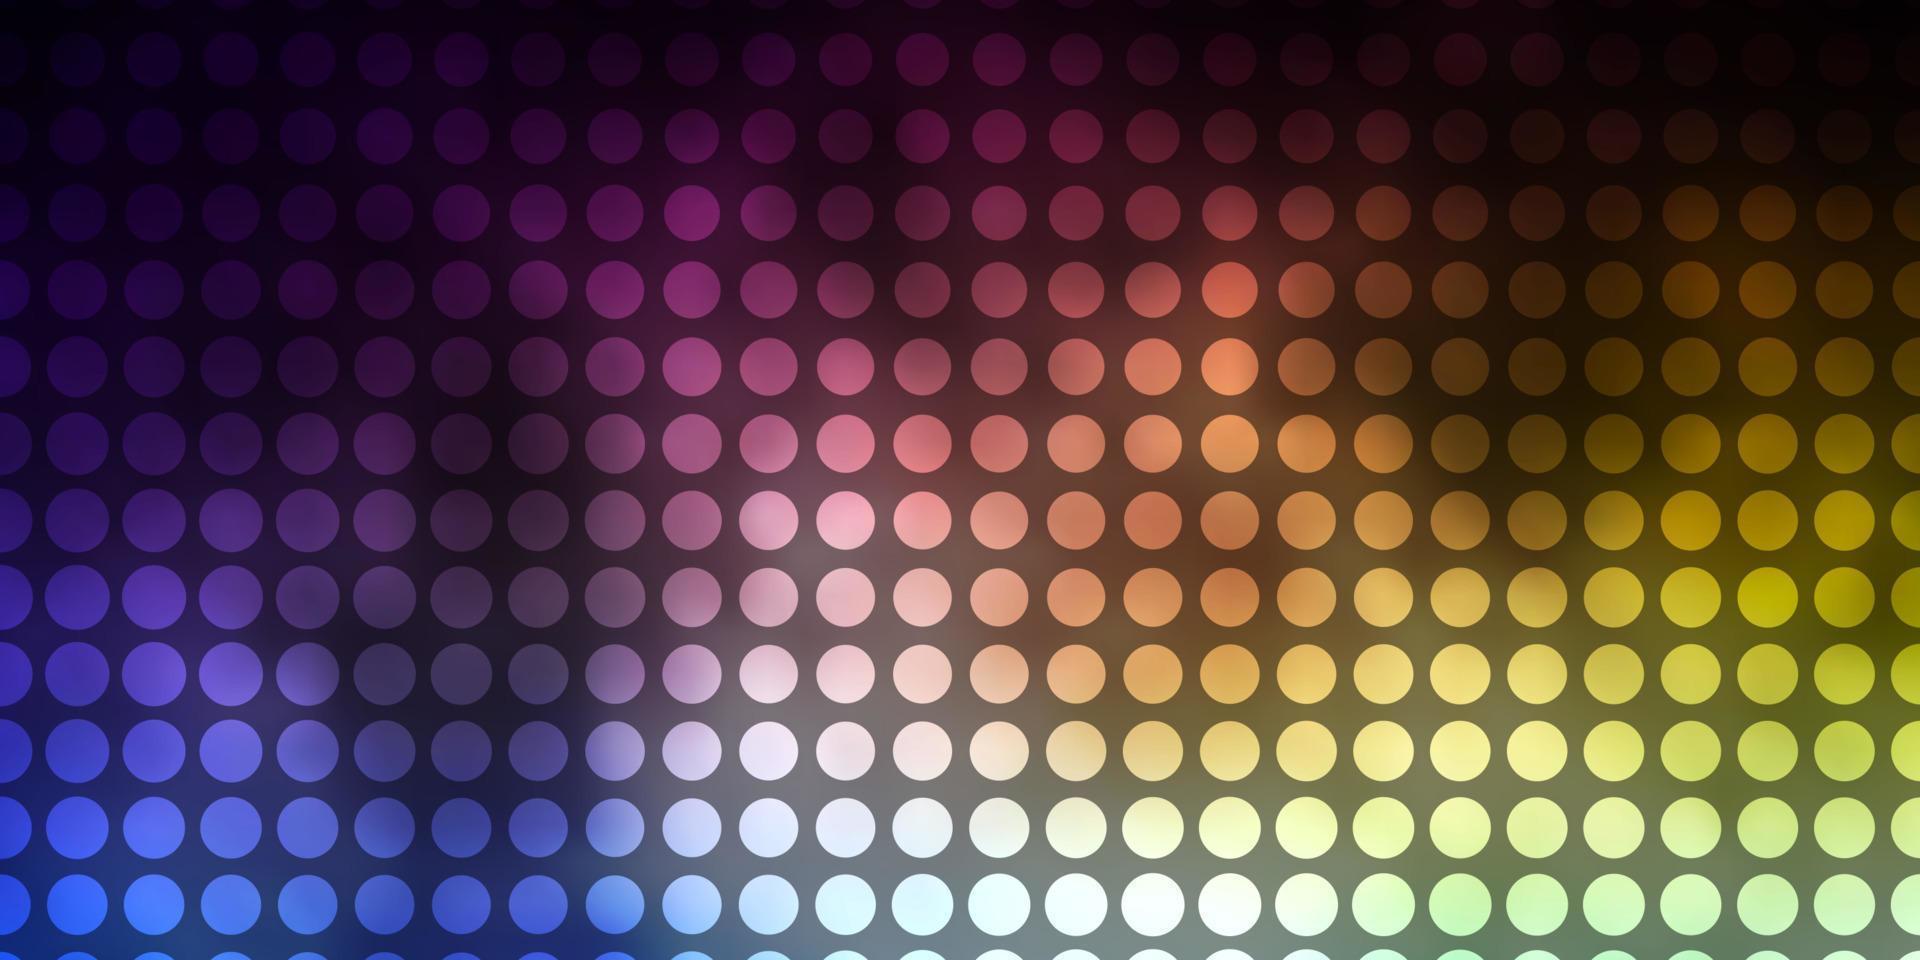 mörkblå, gul vektorbakgrund med cirklar. vektor